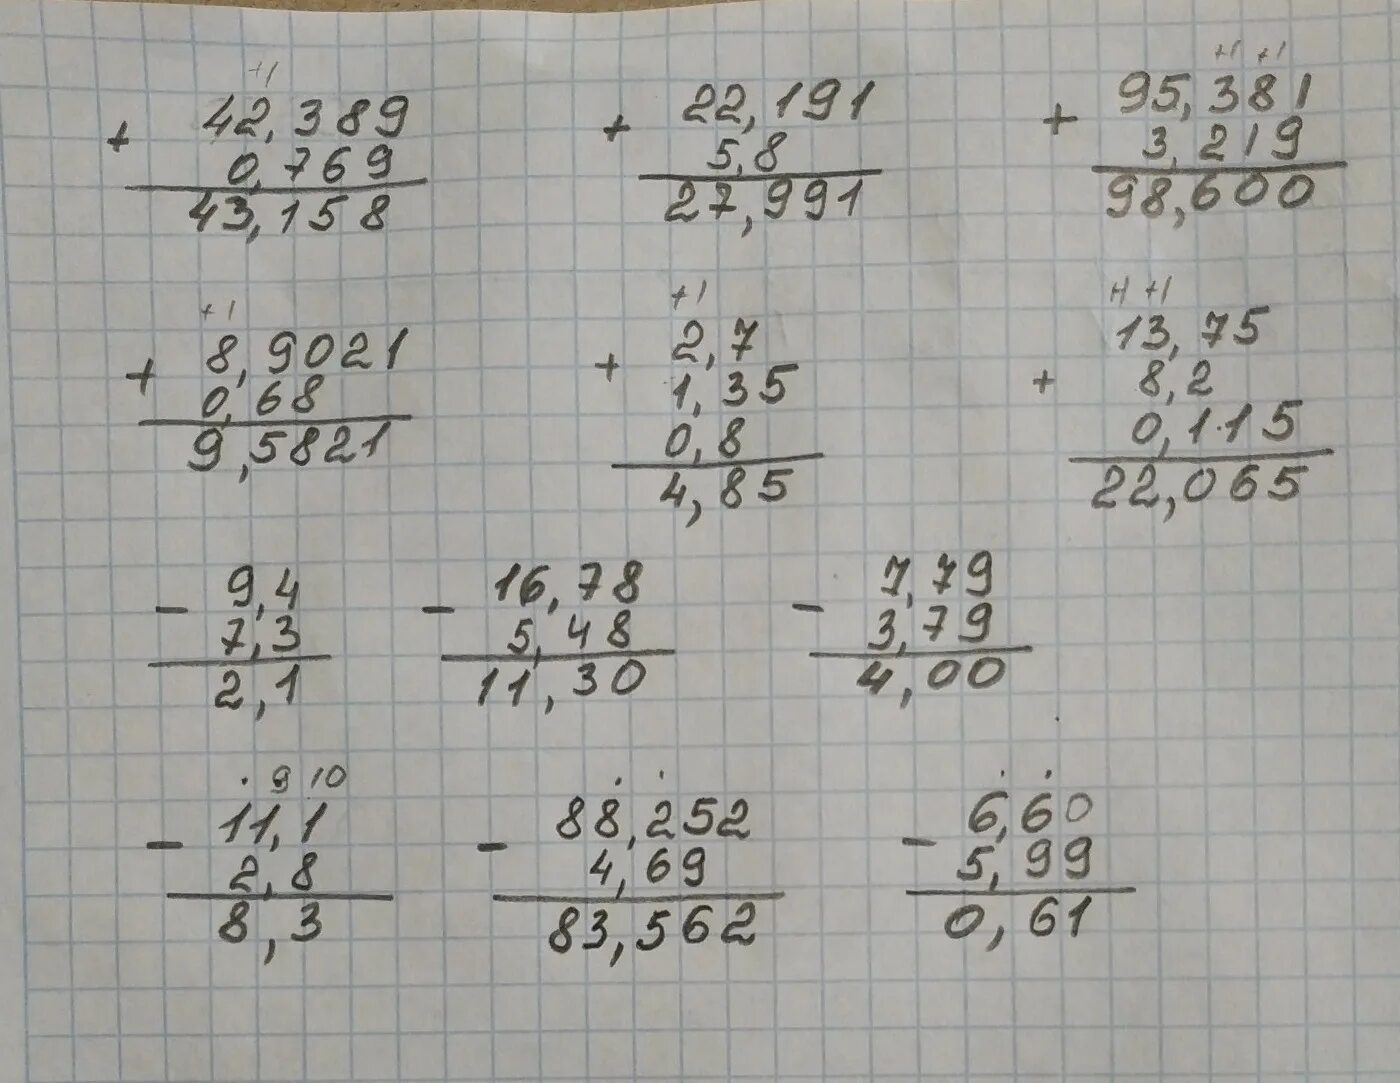 5 7 1 9 столбиком. Выполните сложение 0 769 +42.389 5.8+22.191 столбиком. Выполните сложение 0 769 +42.389 столбиком. (2,2 - 4,3):0,6 Решение столбиком. Выполните сложение 1-2/7=.